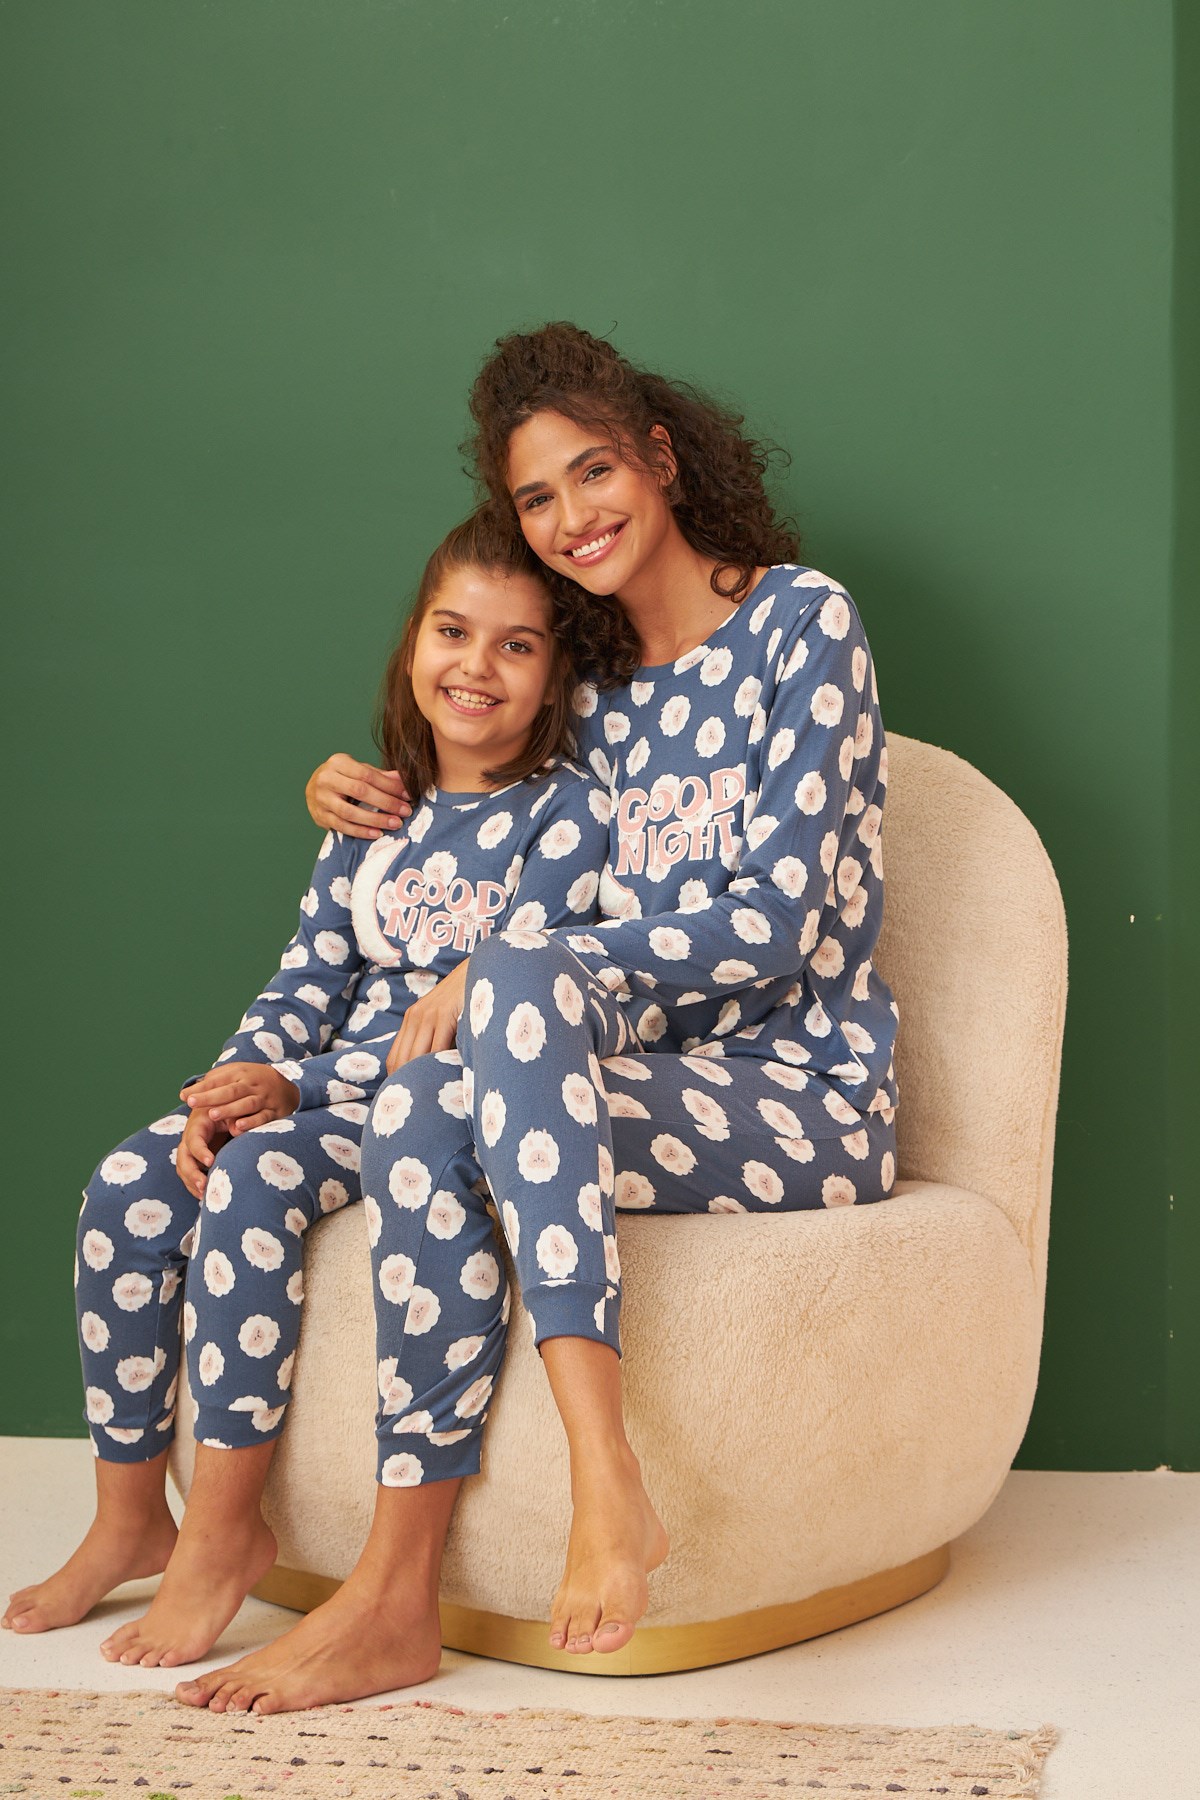 Good Nıght termal pijama takımı Anne kız ayrı ayrı satılır fıyatları  farklıdır